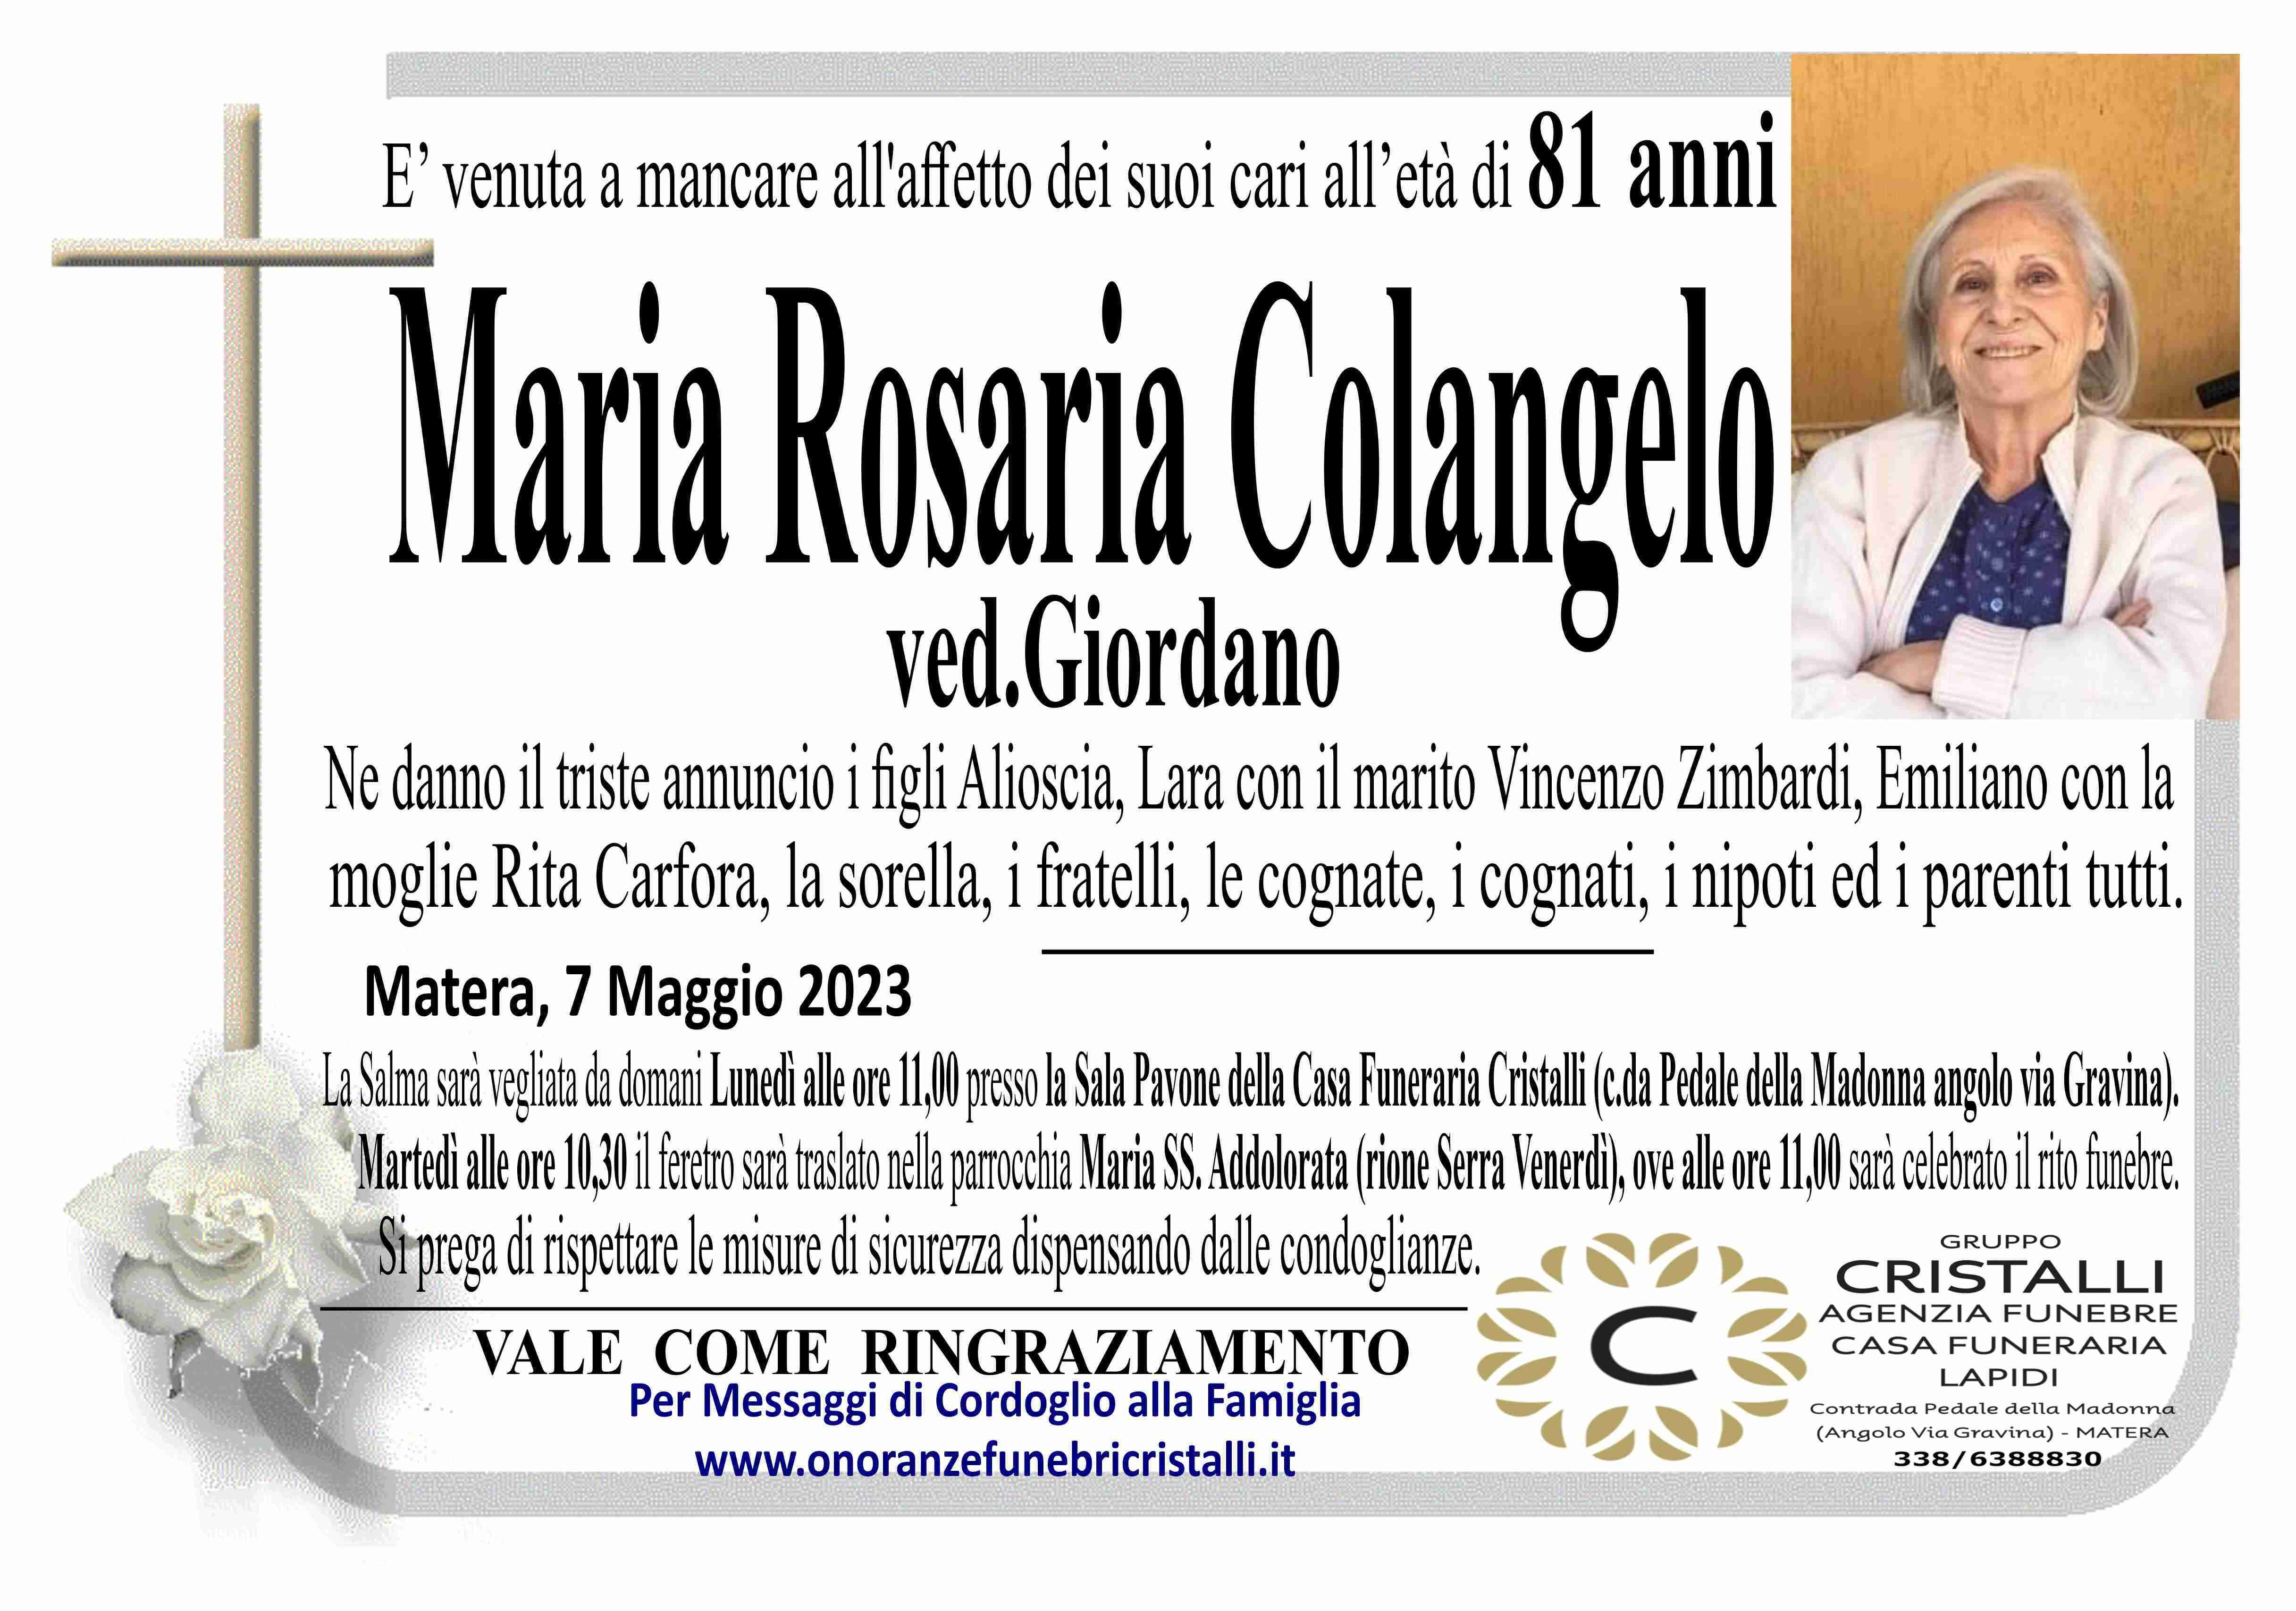 Maria Rosaria Colangelo